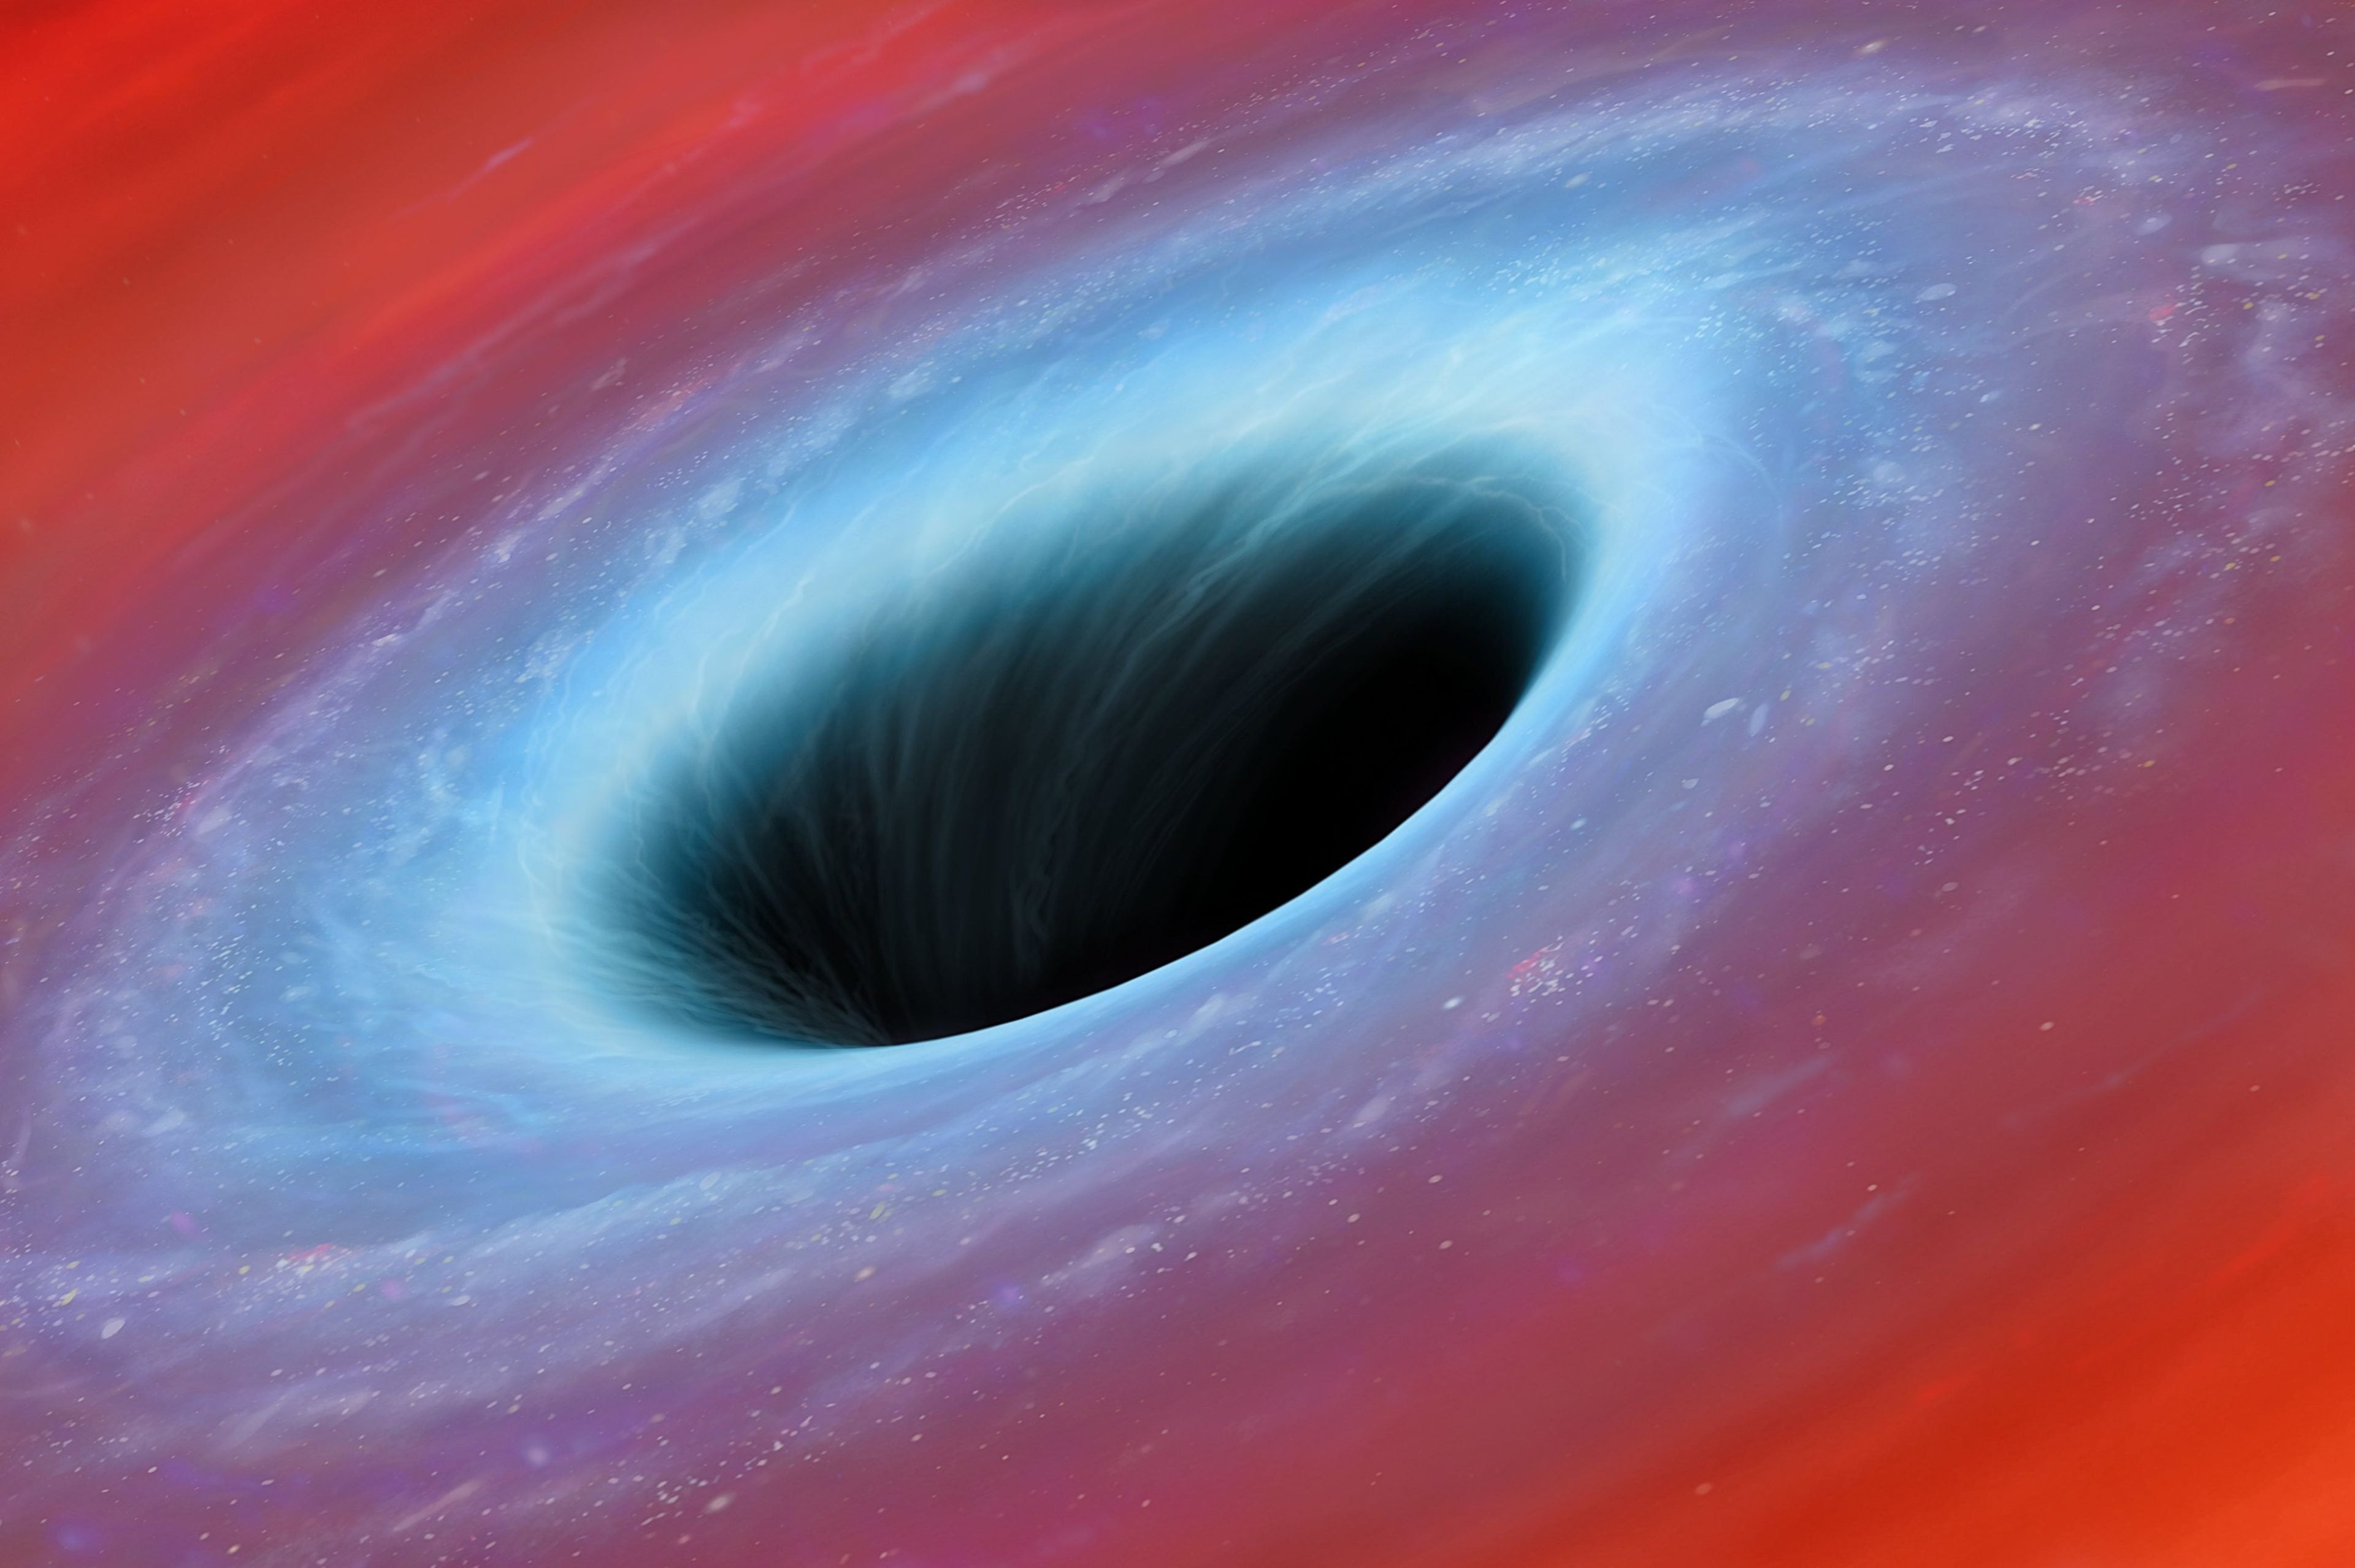 Black Hole Artwork Royalty Free Illustration 1616081355 Scaled مجلة نقطة العلمية